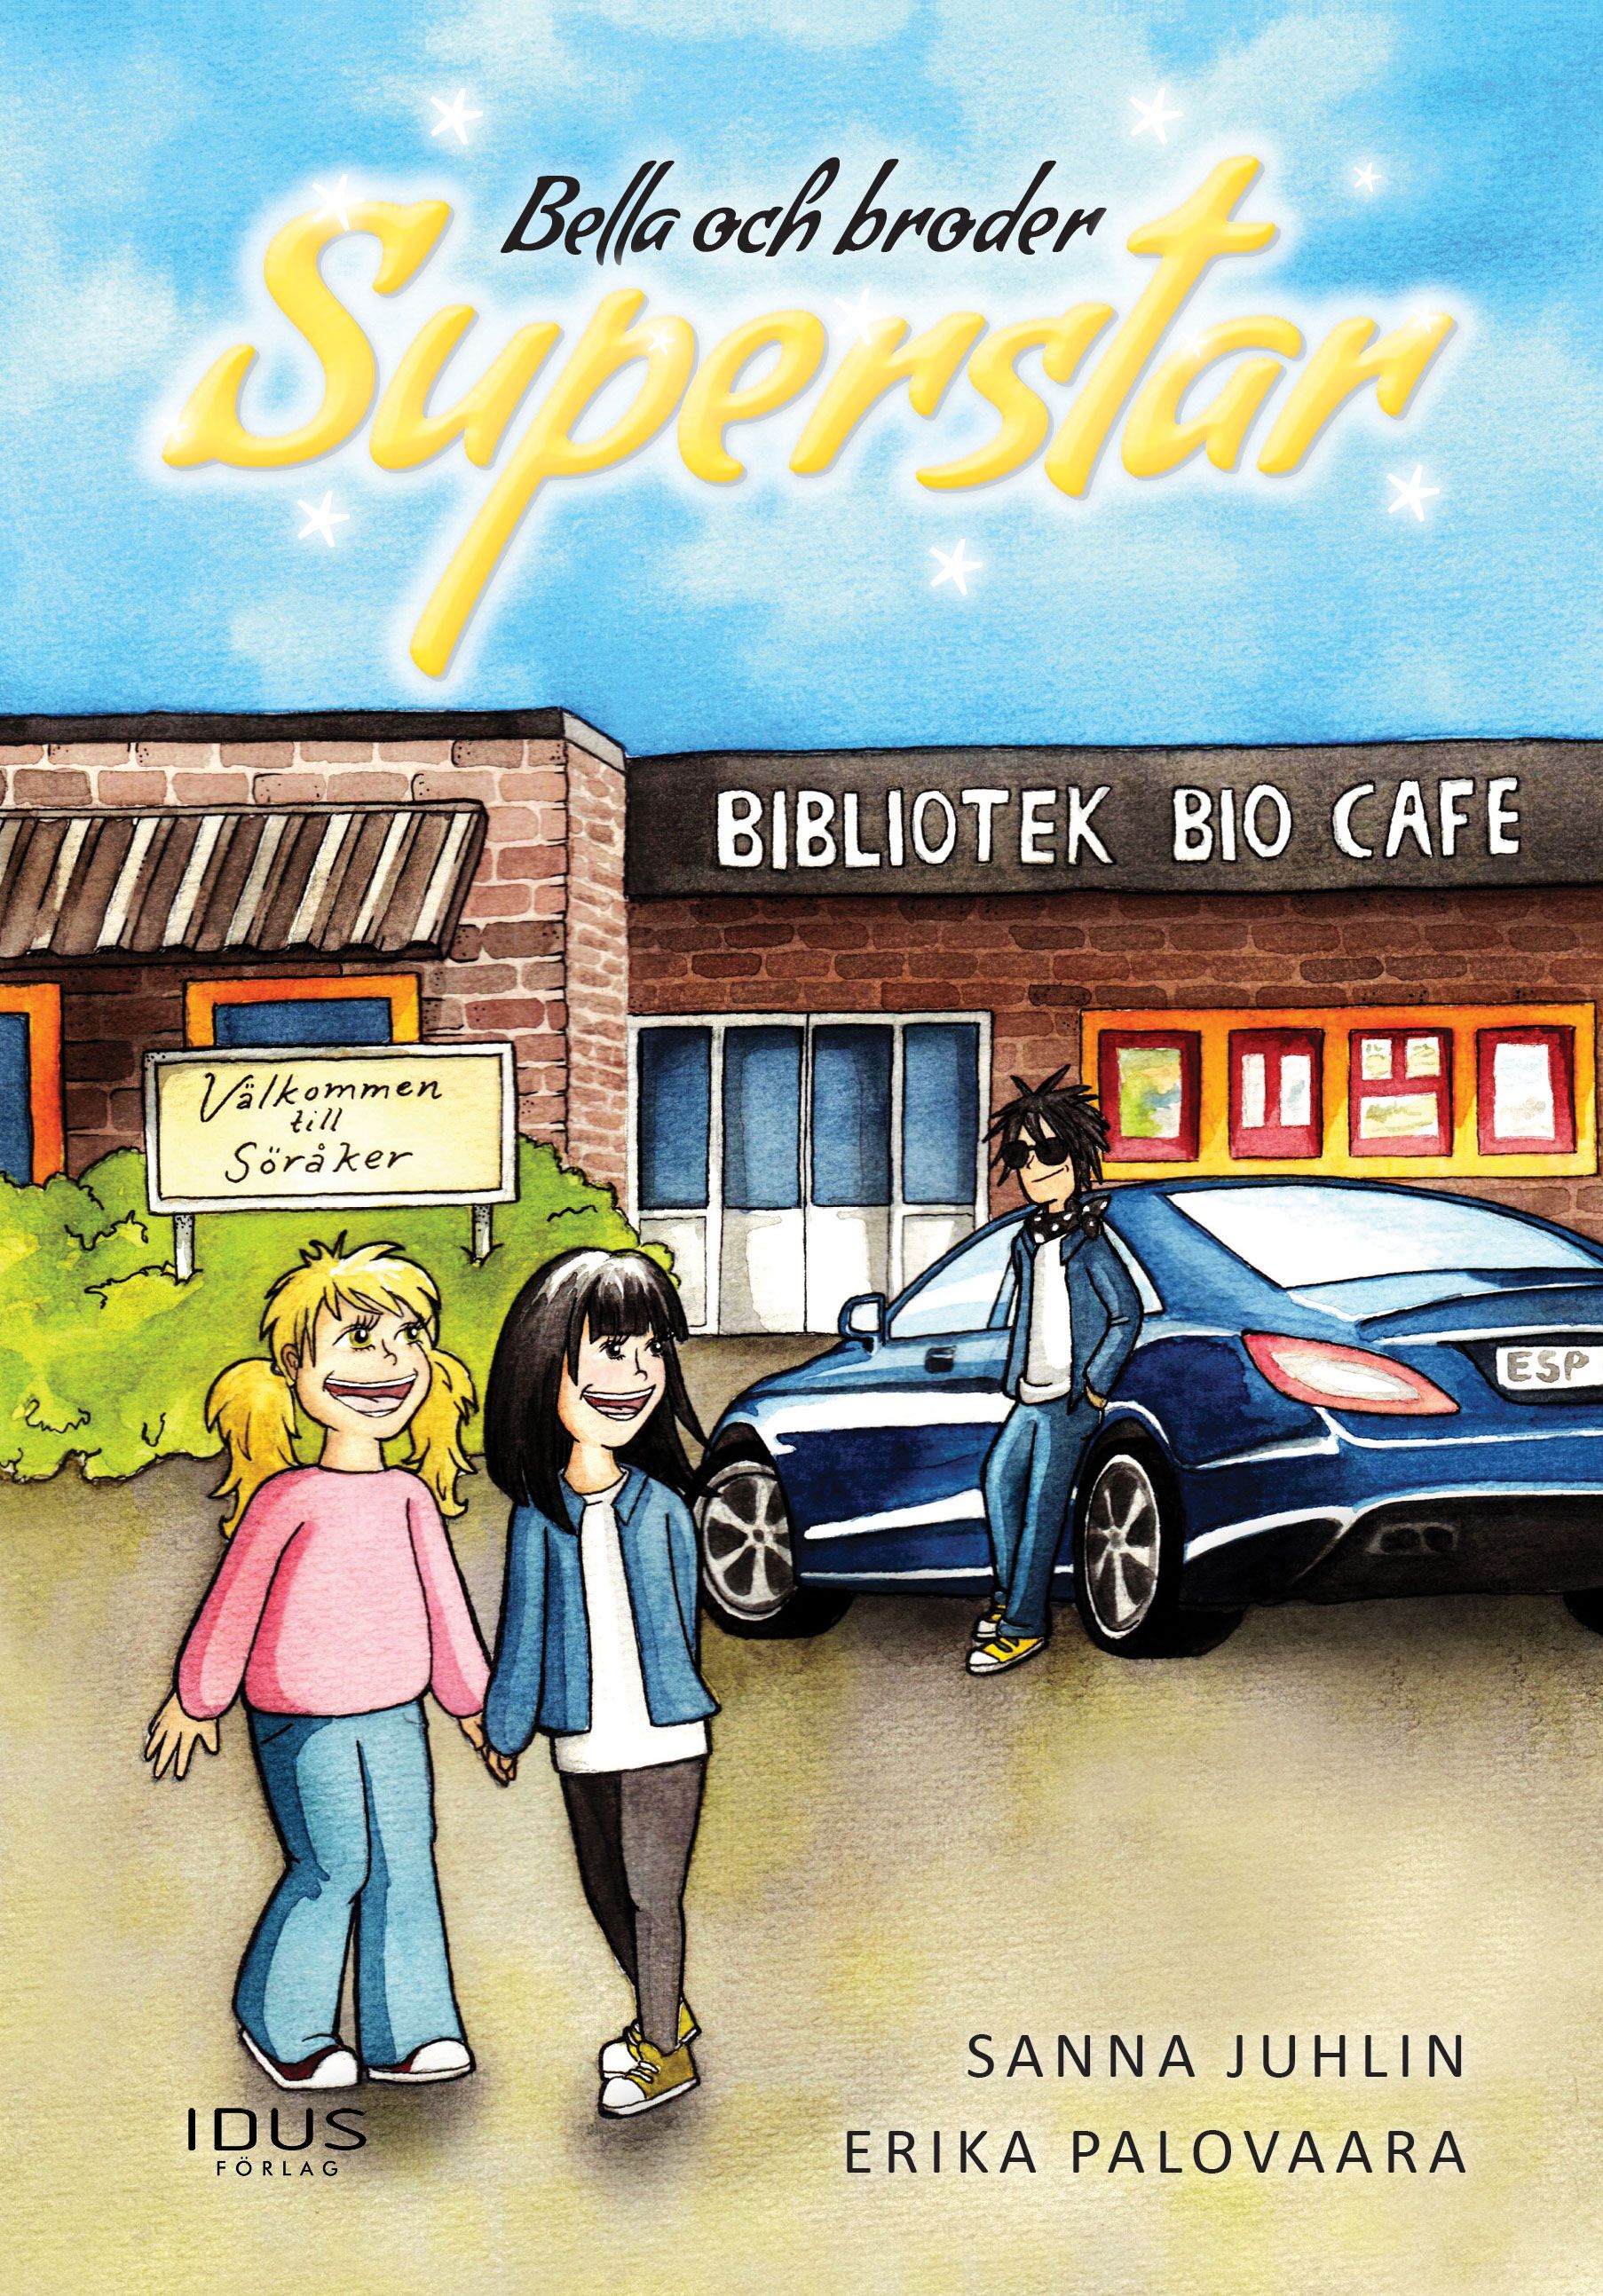 Bella och broder Superstar, eBook by Sanna Juhlin